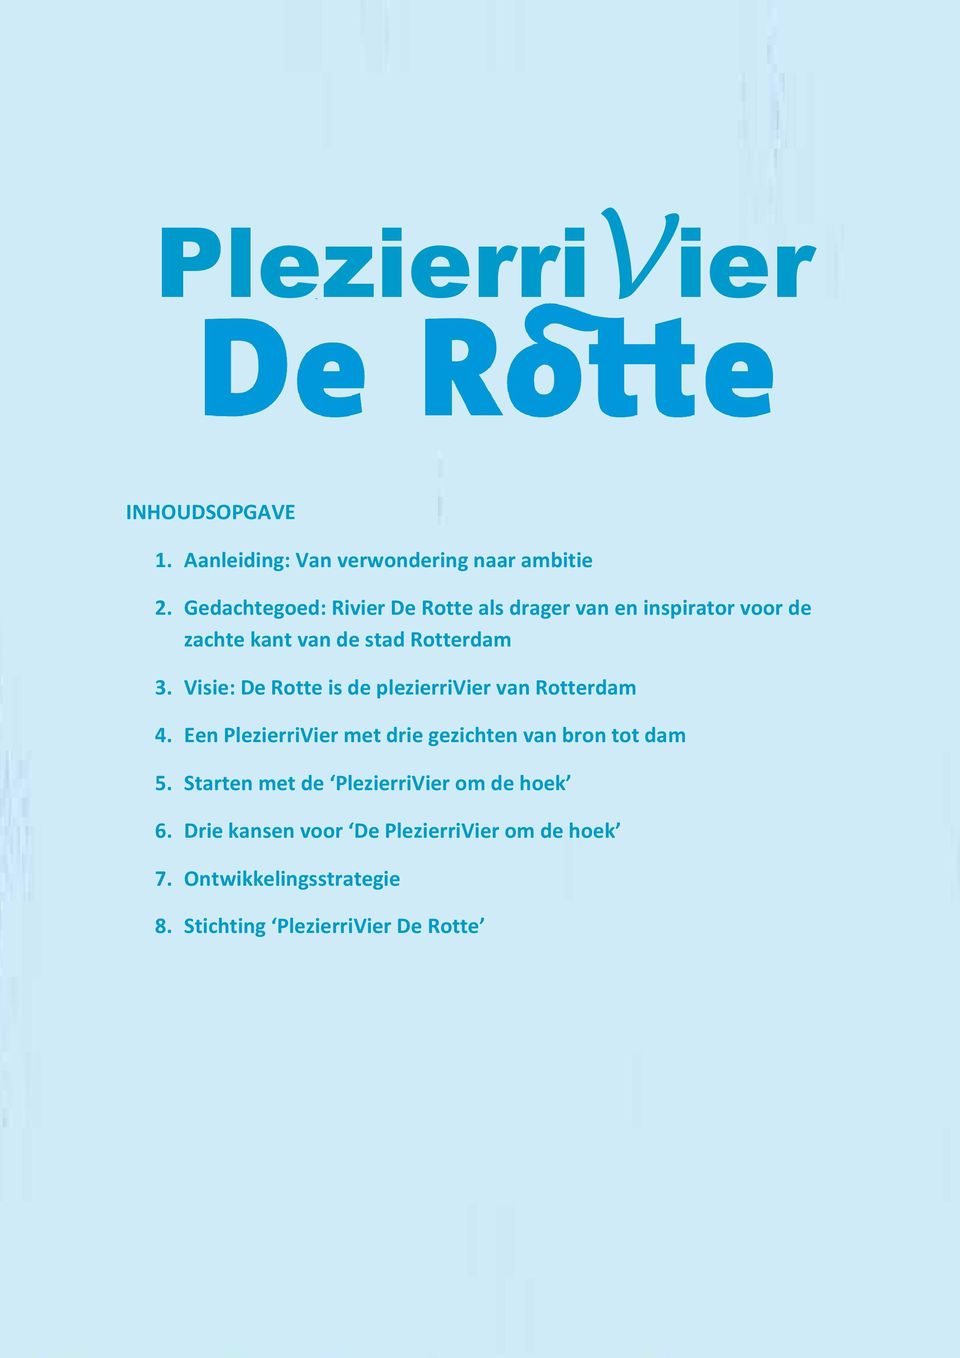 Visie: De Rotte is de plezierrivier van Rotterdam 4. Een PlezierriVier met drie gezichten van bron tot dam 5.